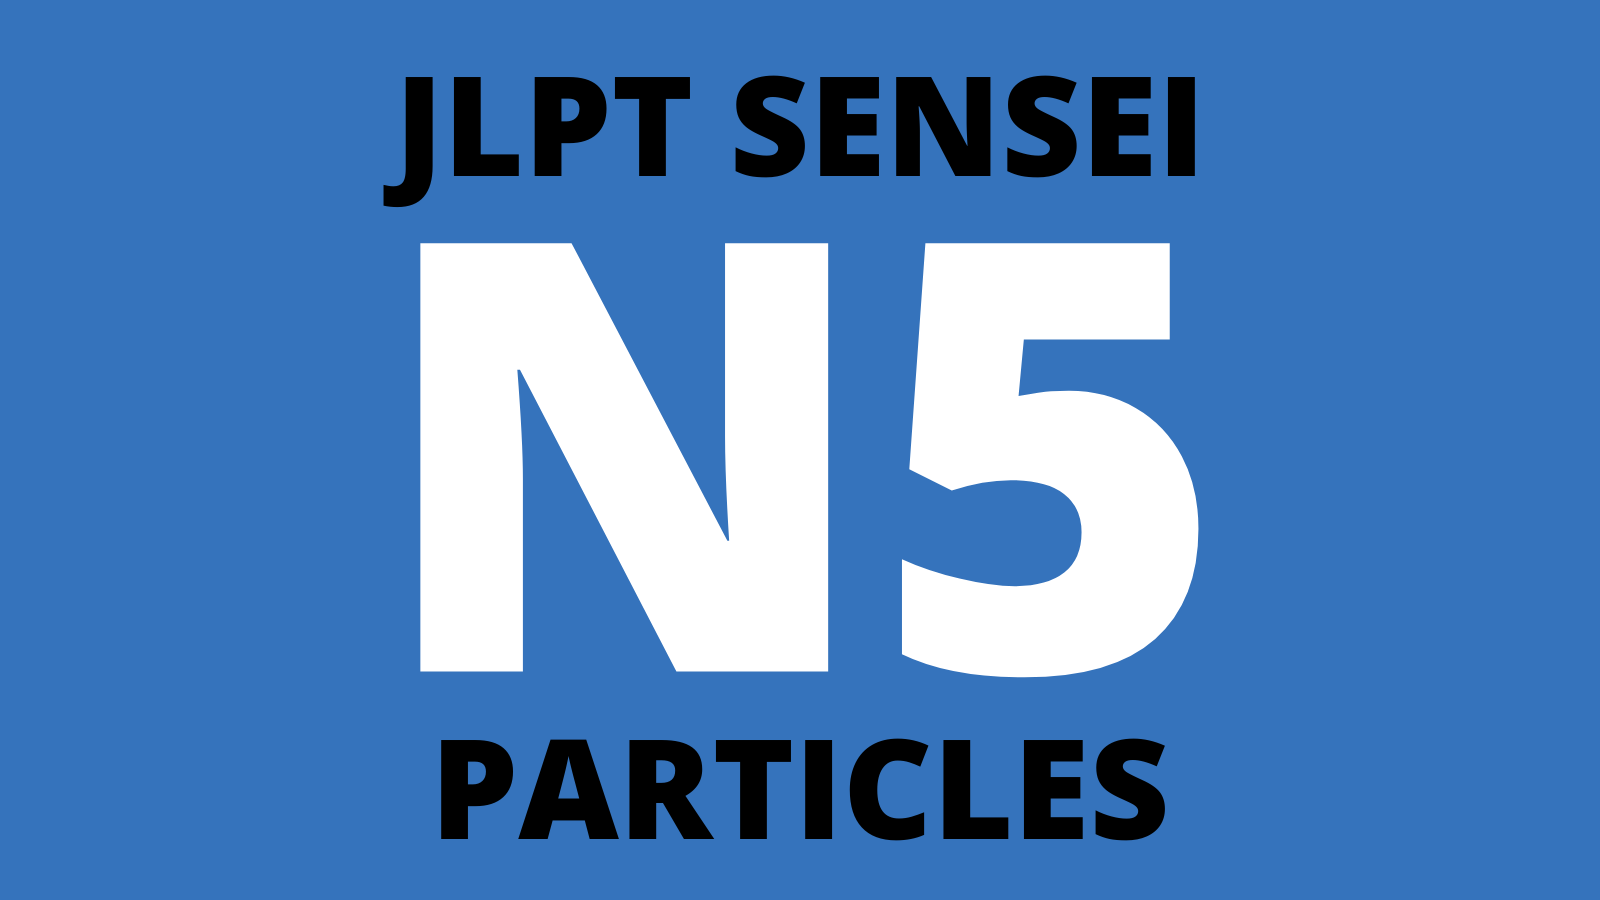 jlpt-n5-particles-list-beginner-japanese-jlptsensei